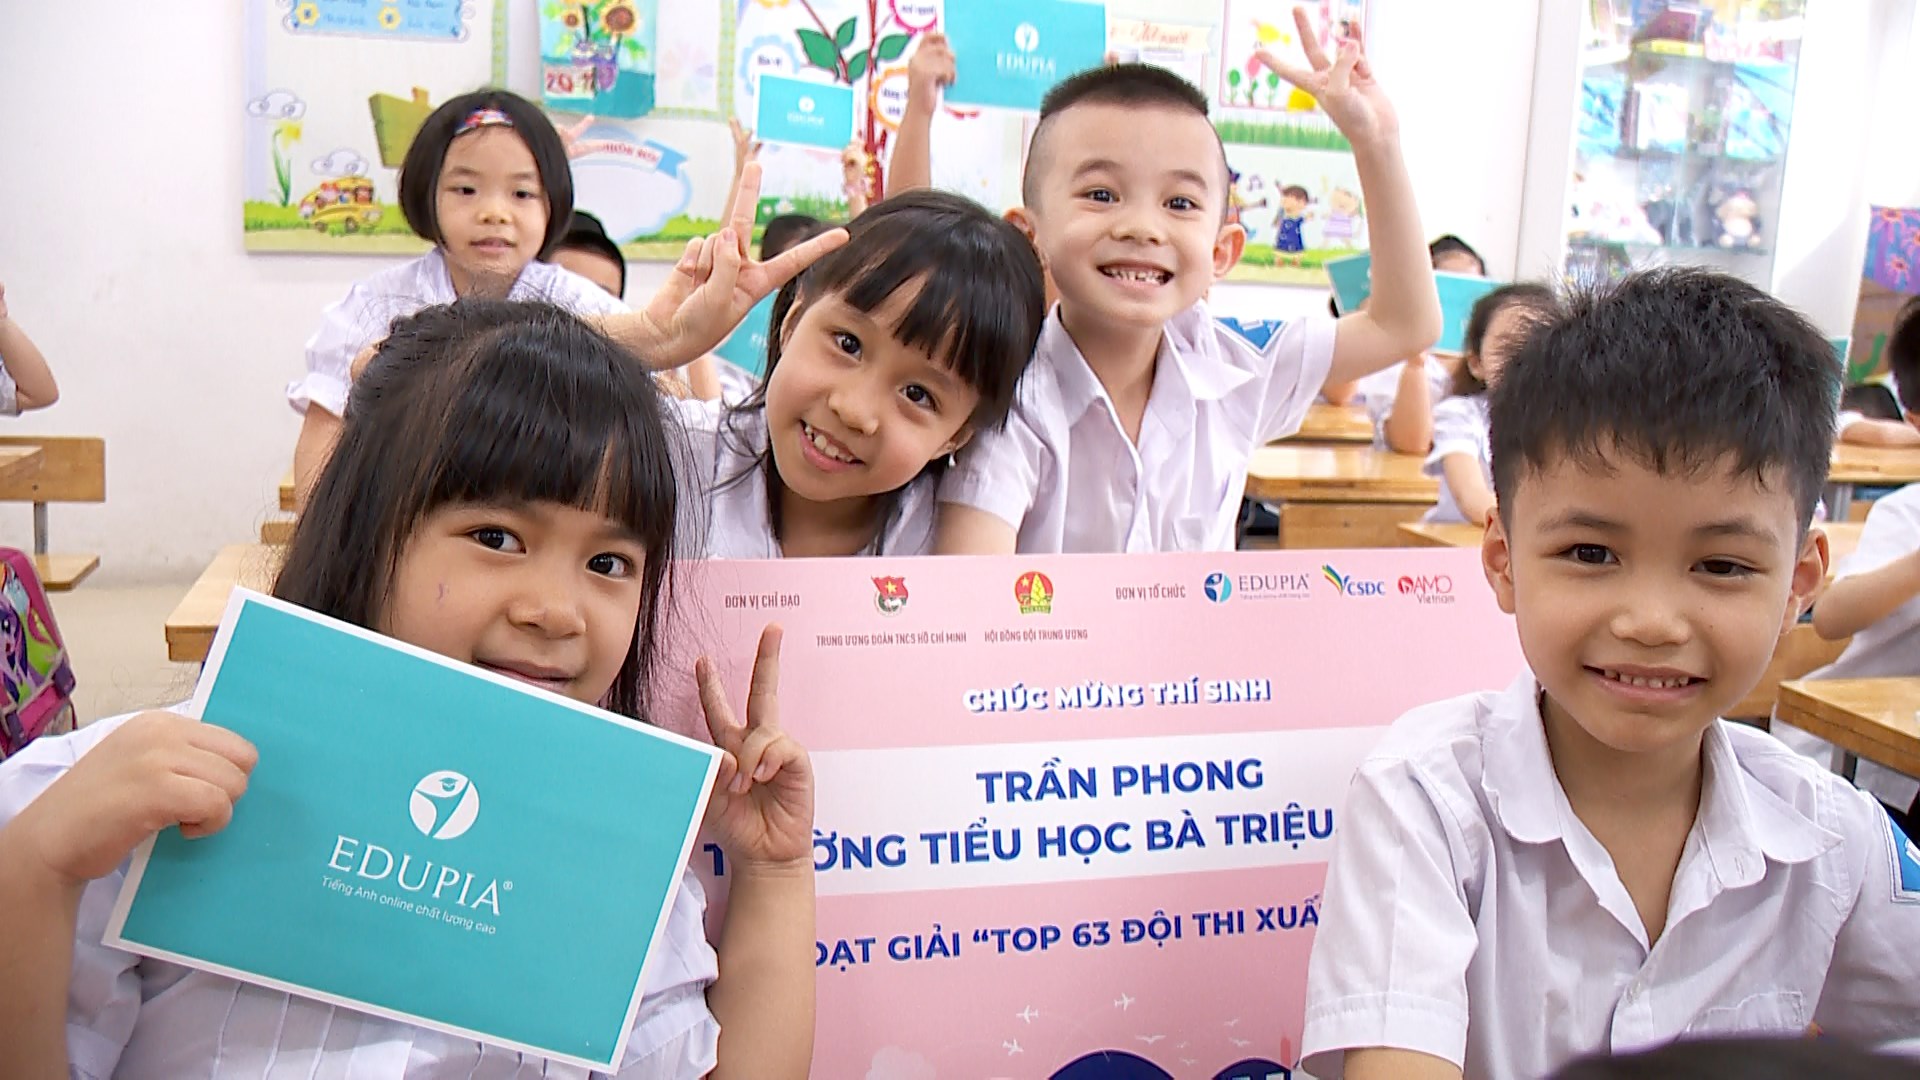 Điểm danh các trường tiểu học công lập nổi tiếng trên địa bàn Hà Nội, nhiều phụ huynh sẵn sàng chuyển nhà để có thể cho con theo học tại trường - Ảnh 3.